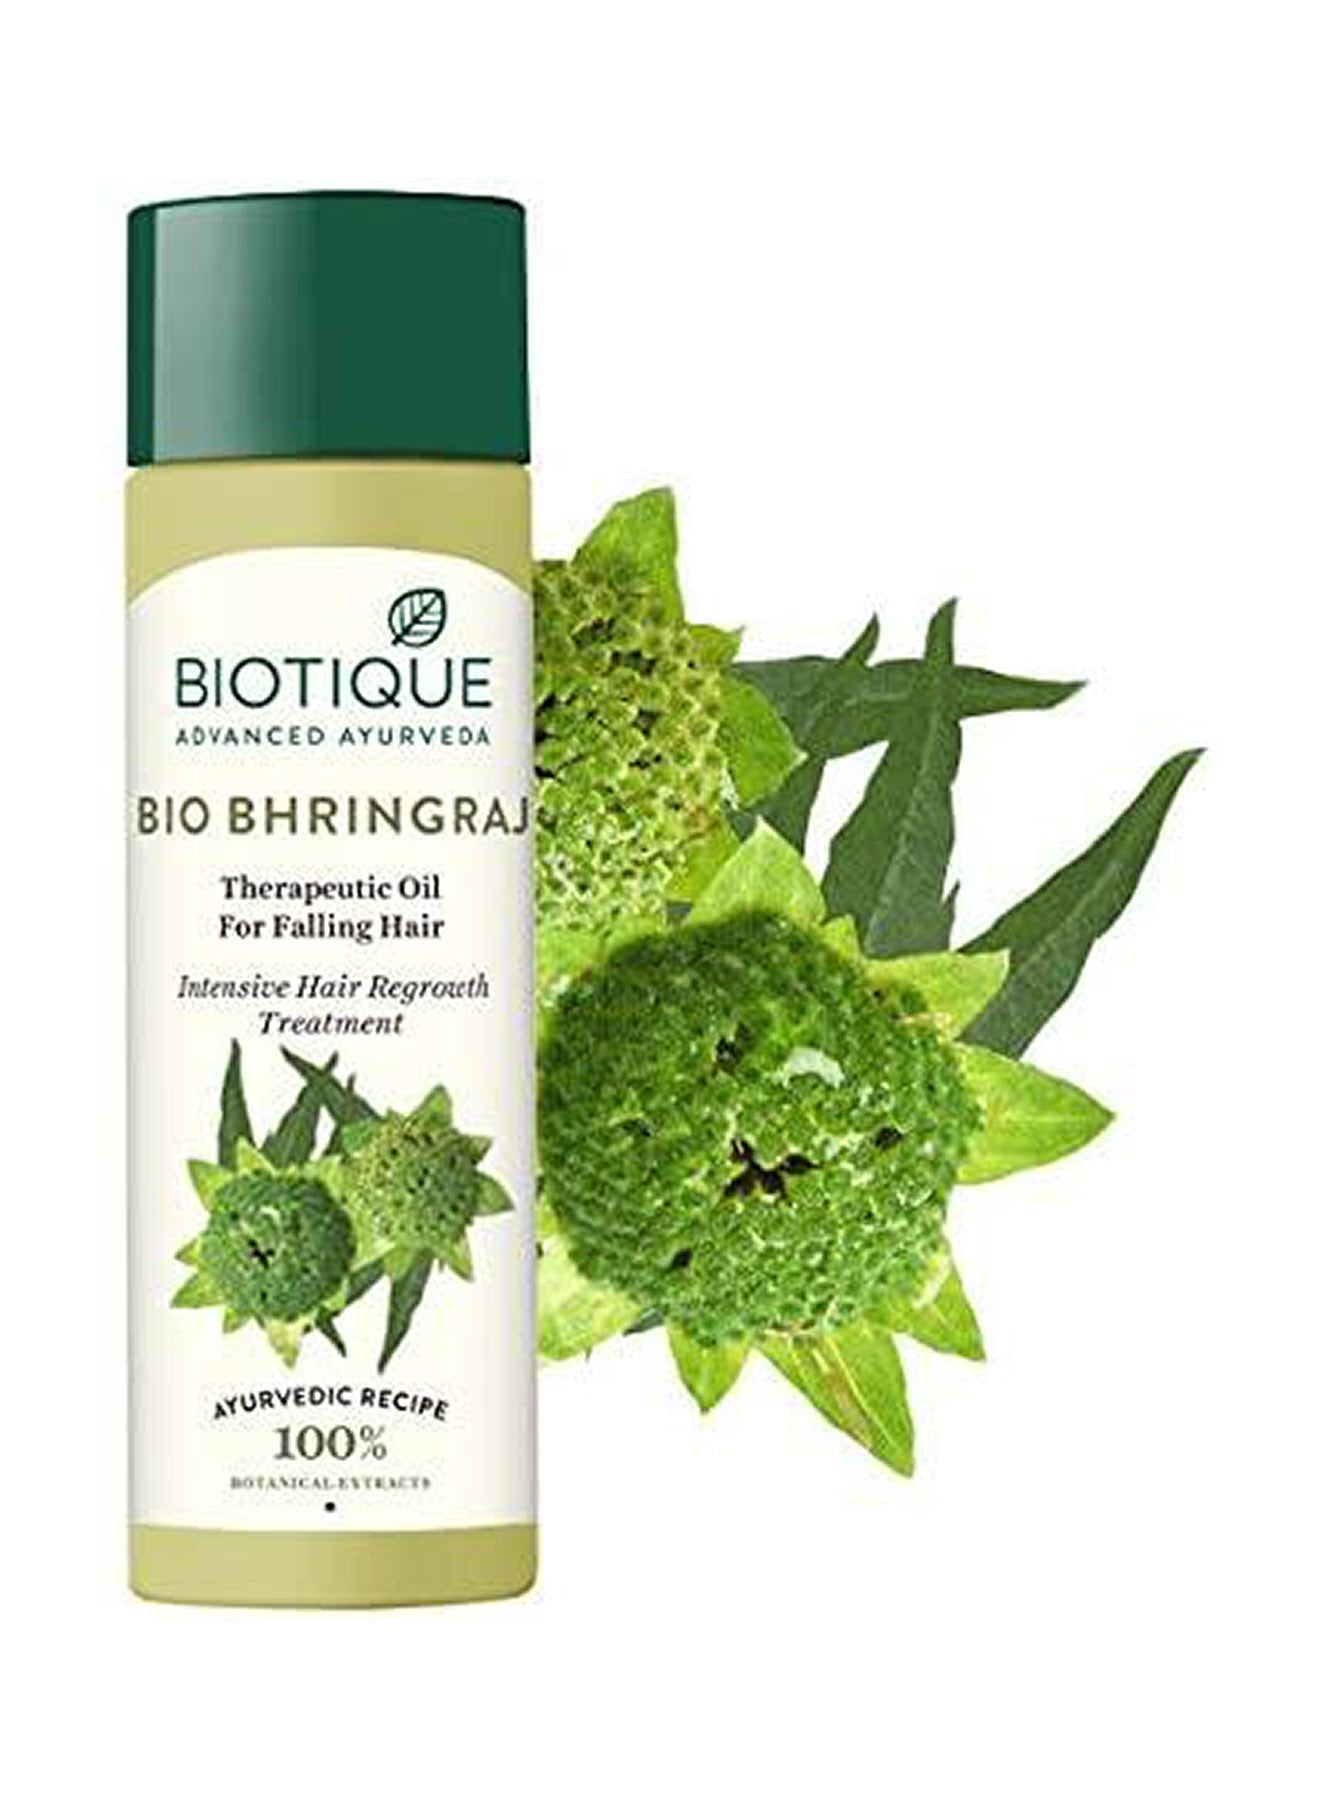 Biotique Botanicals Bhringraj Hair Oil 120ml Value Pack of 12 